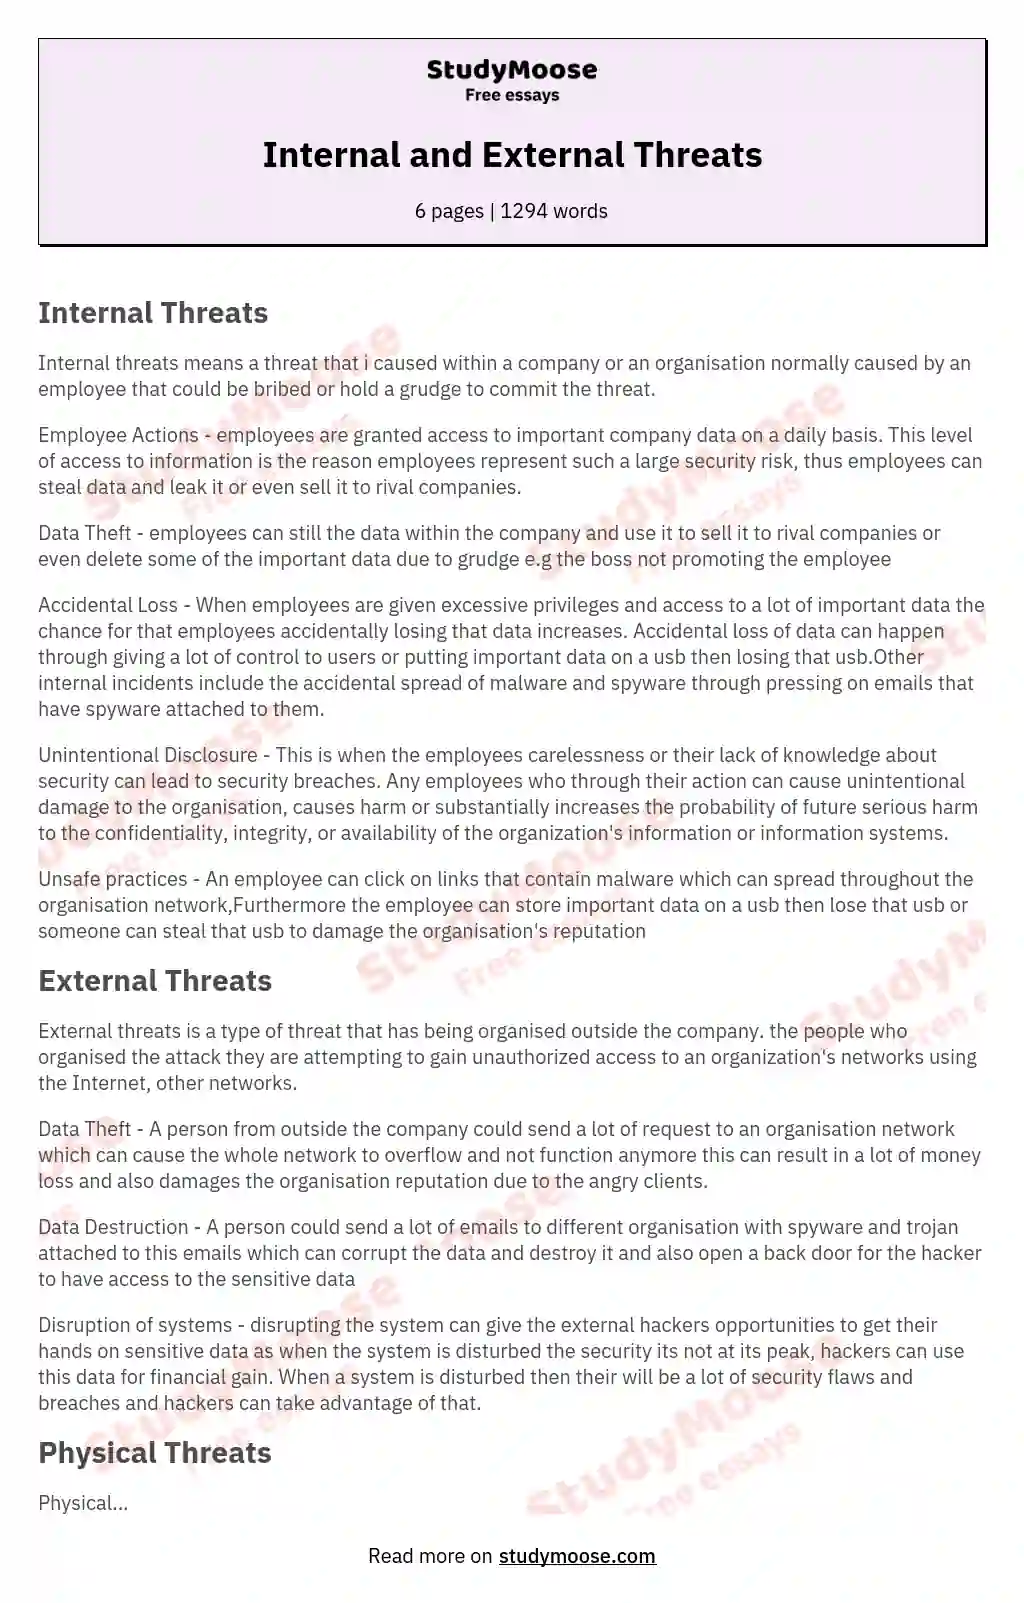 Internal and External Threats essay